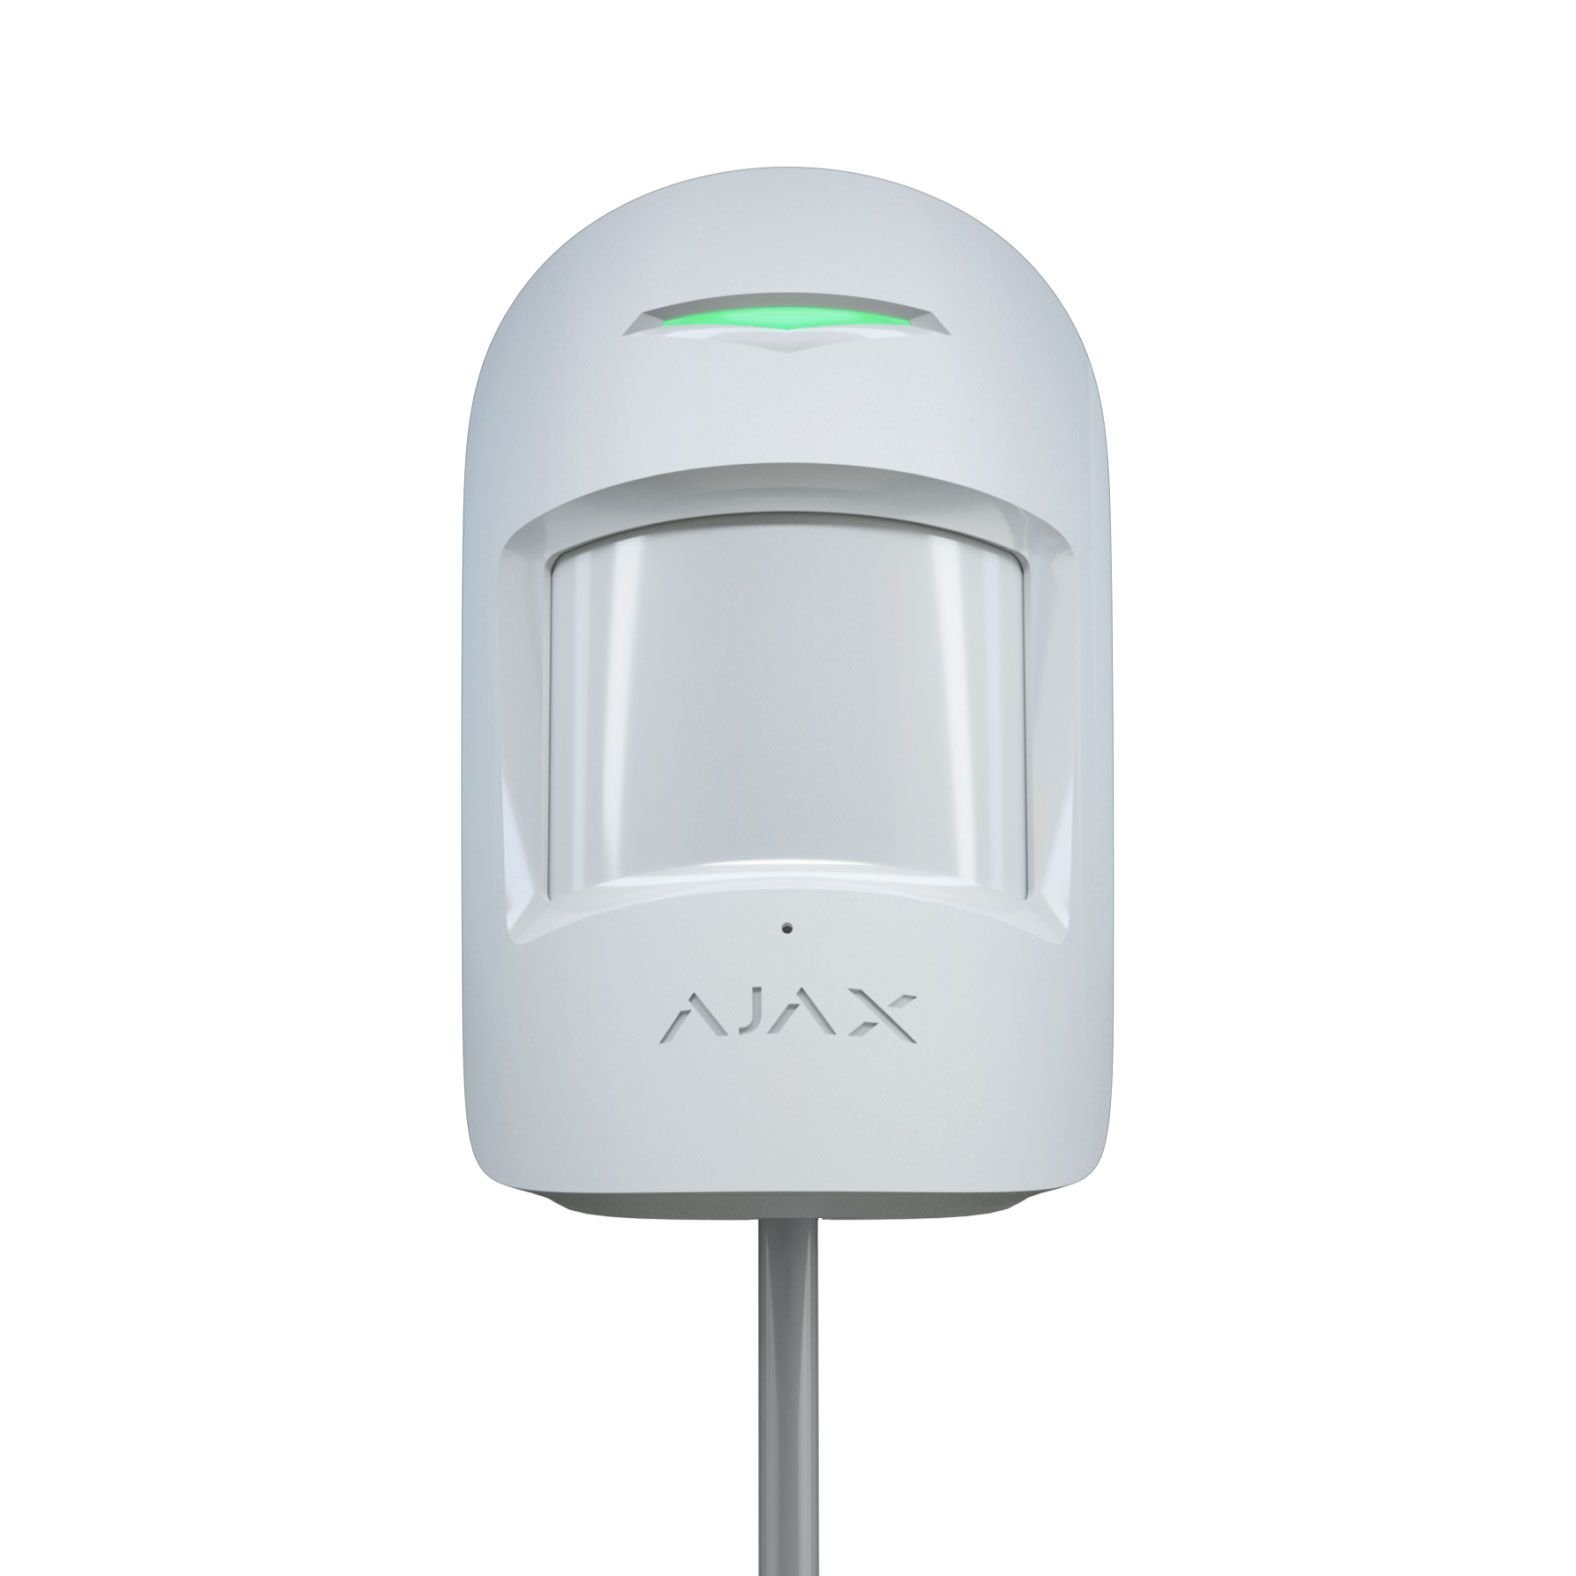 Ajax MotionProtect Fibra White проводной датчик движения